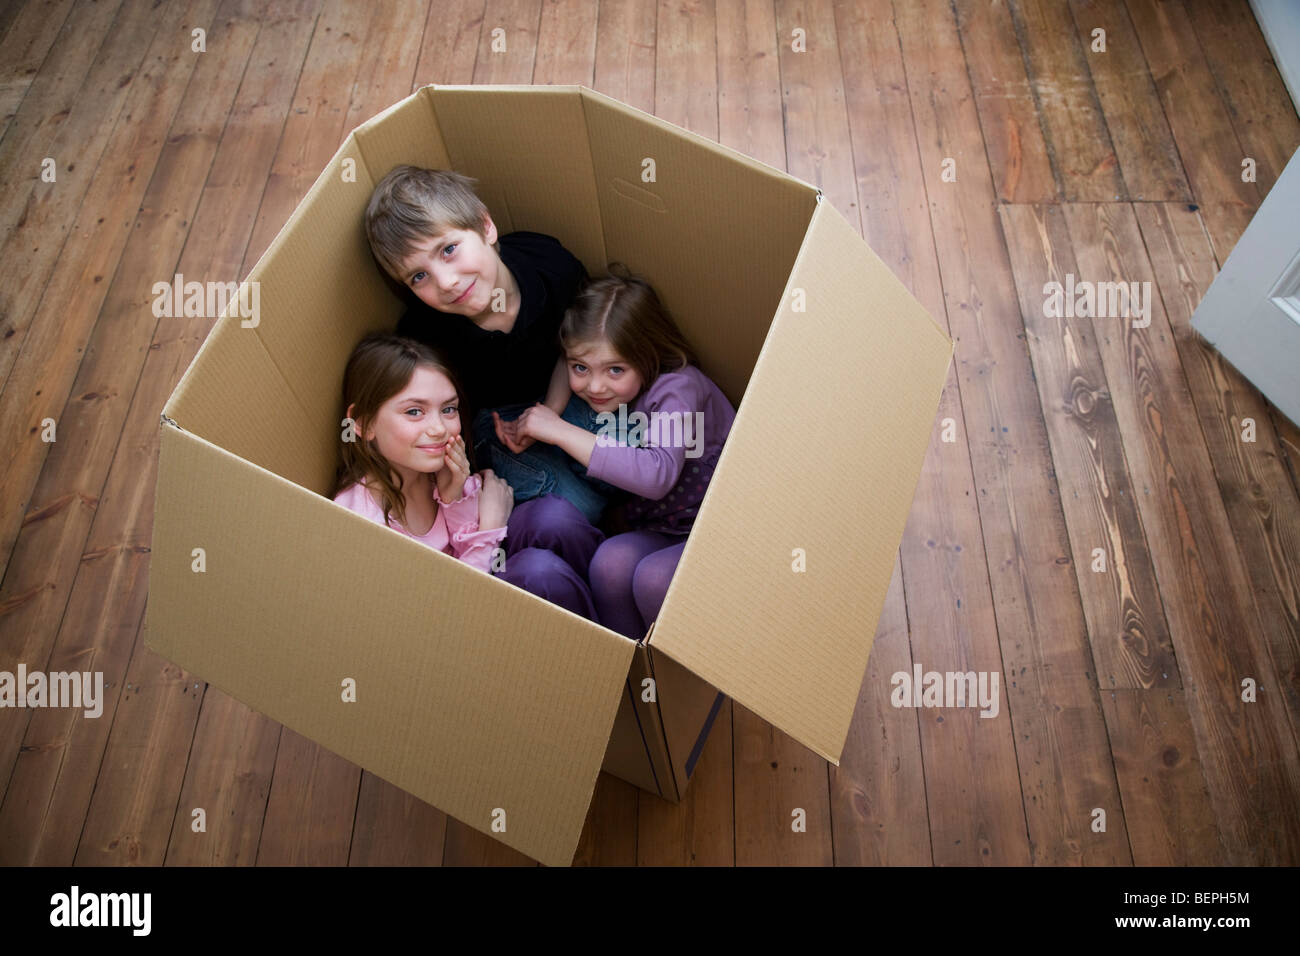 Trois enfants assis à l'intérieur d'une boîte. Banque D'Images